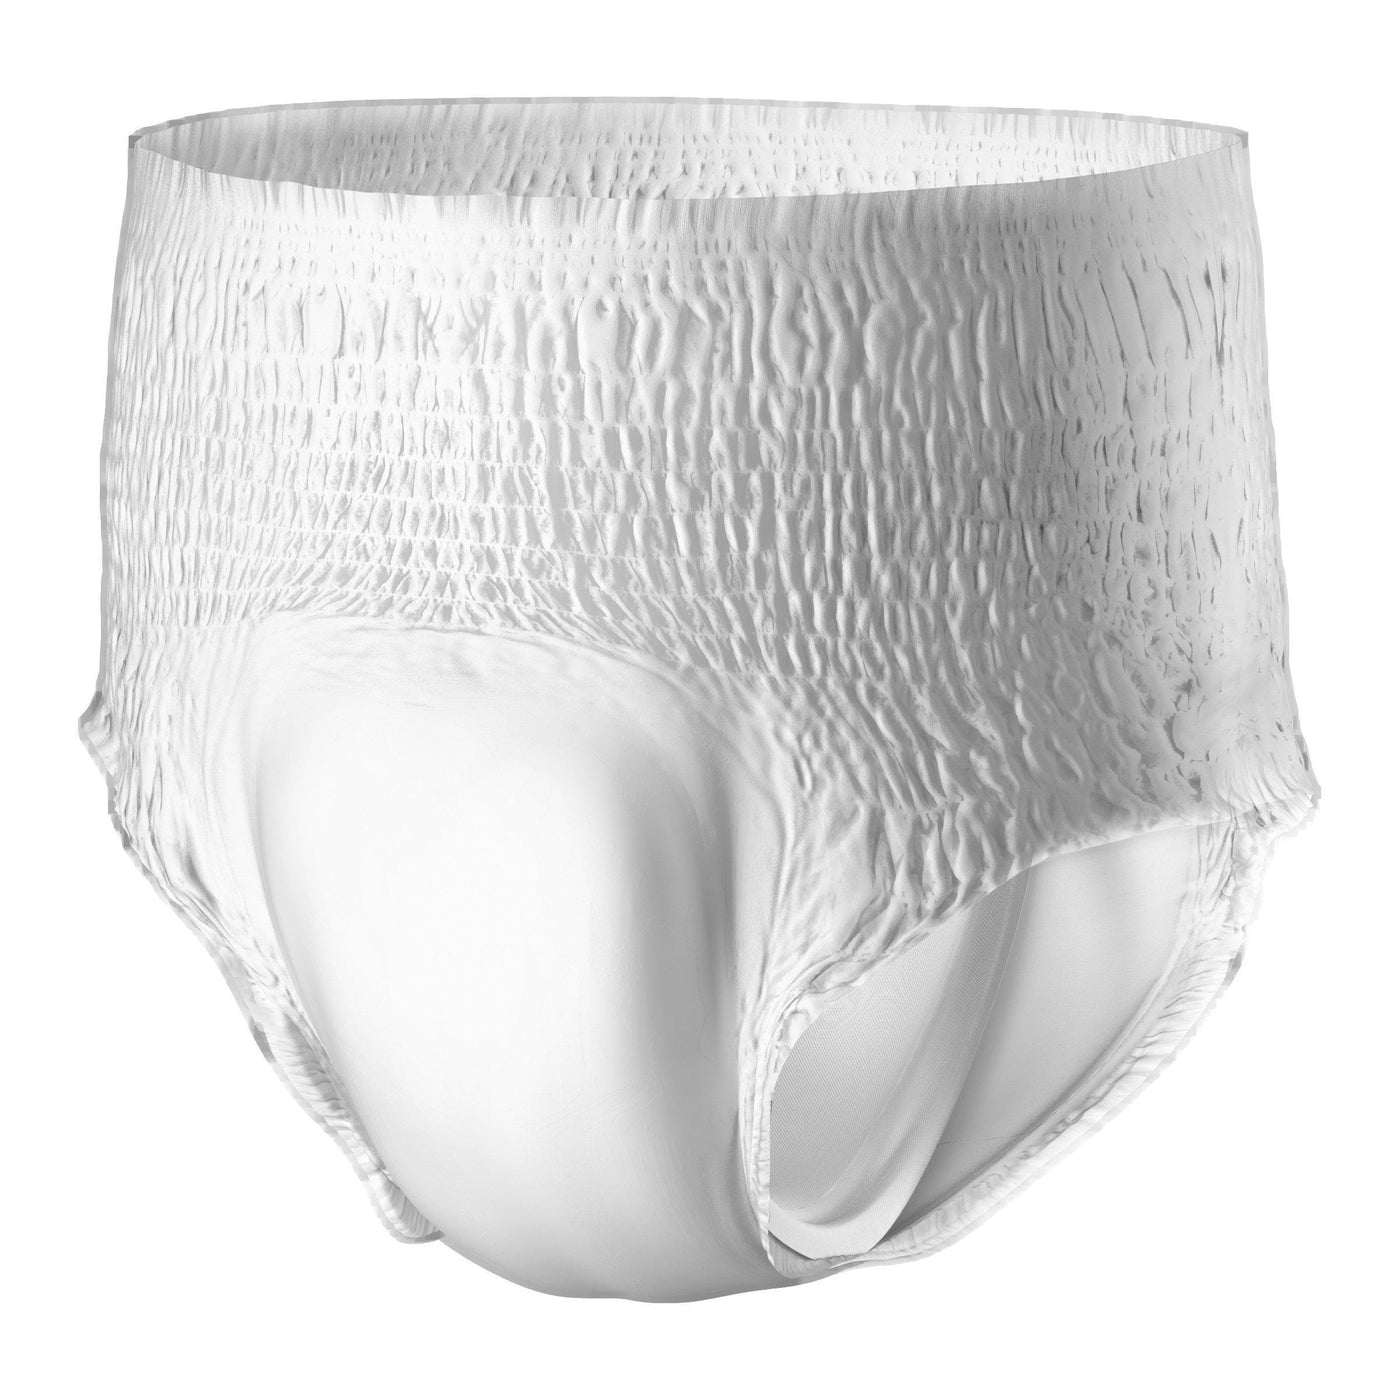 SHAPEE, Disposable Ladies Cotton Panties(24 pcs)XXL